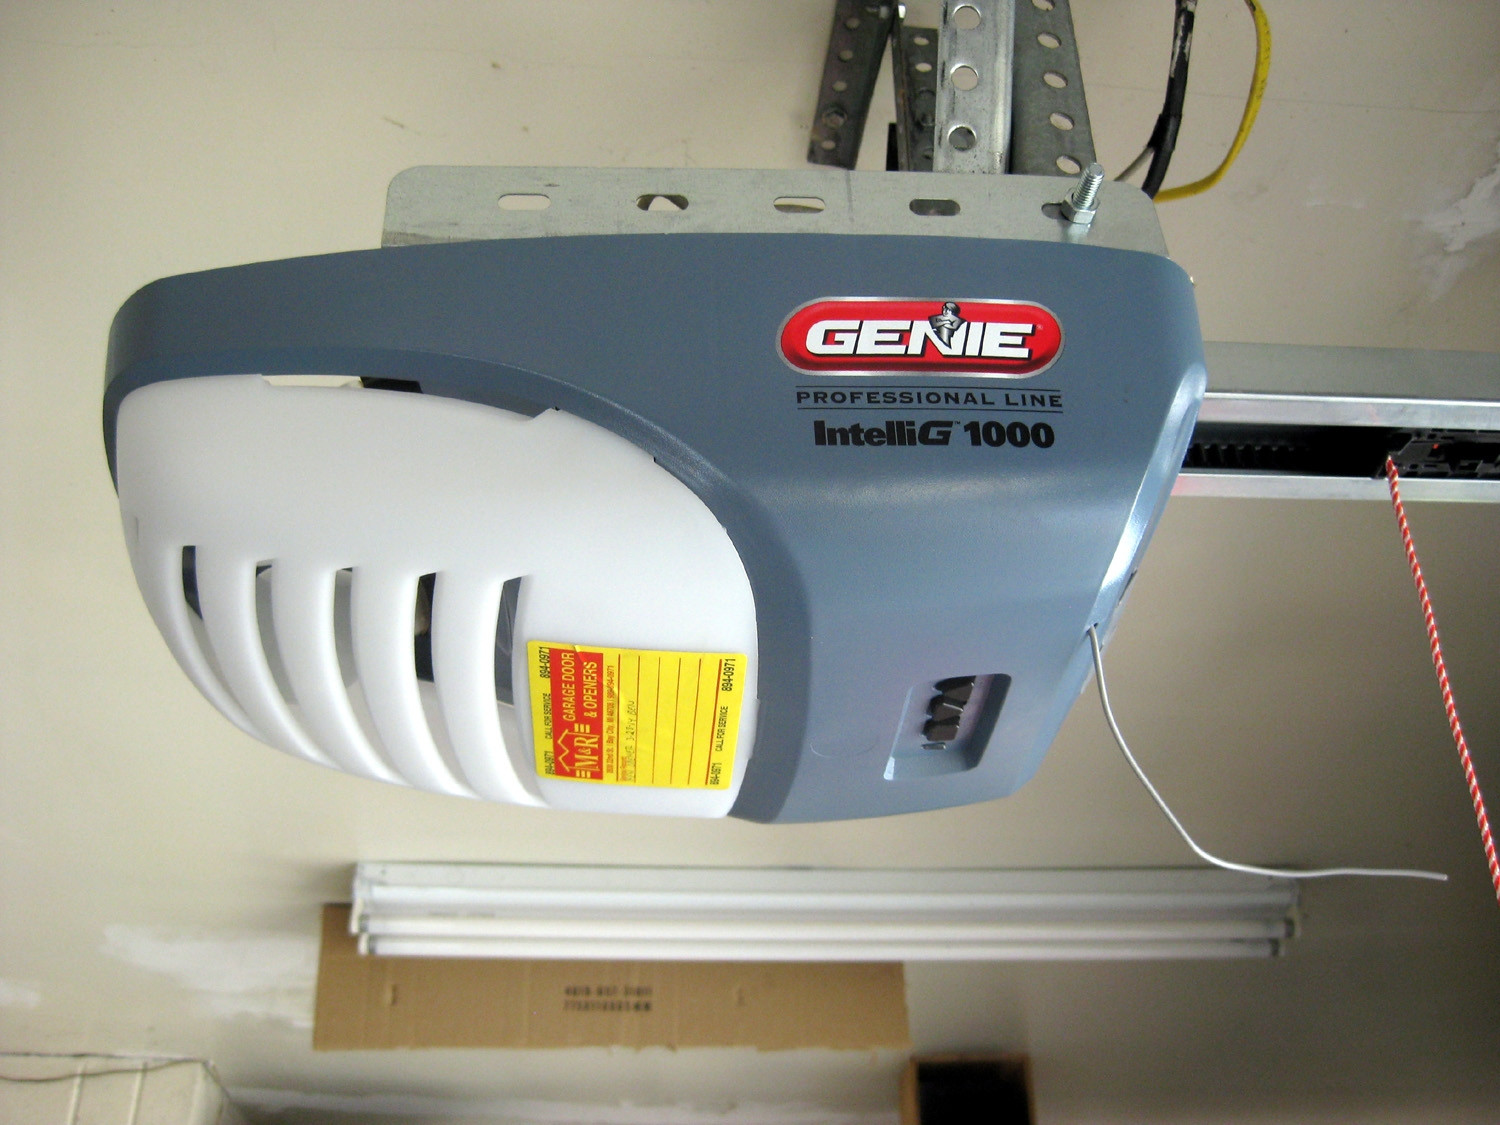 Genie Garage Door Openers Programing
 How To Program A Genie Intellicode Garage Door Opener With